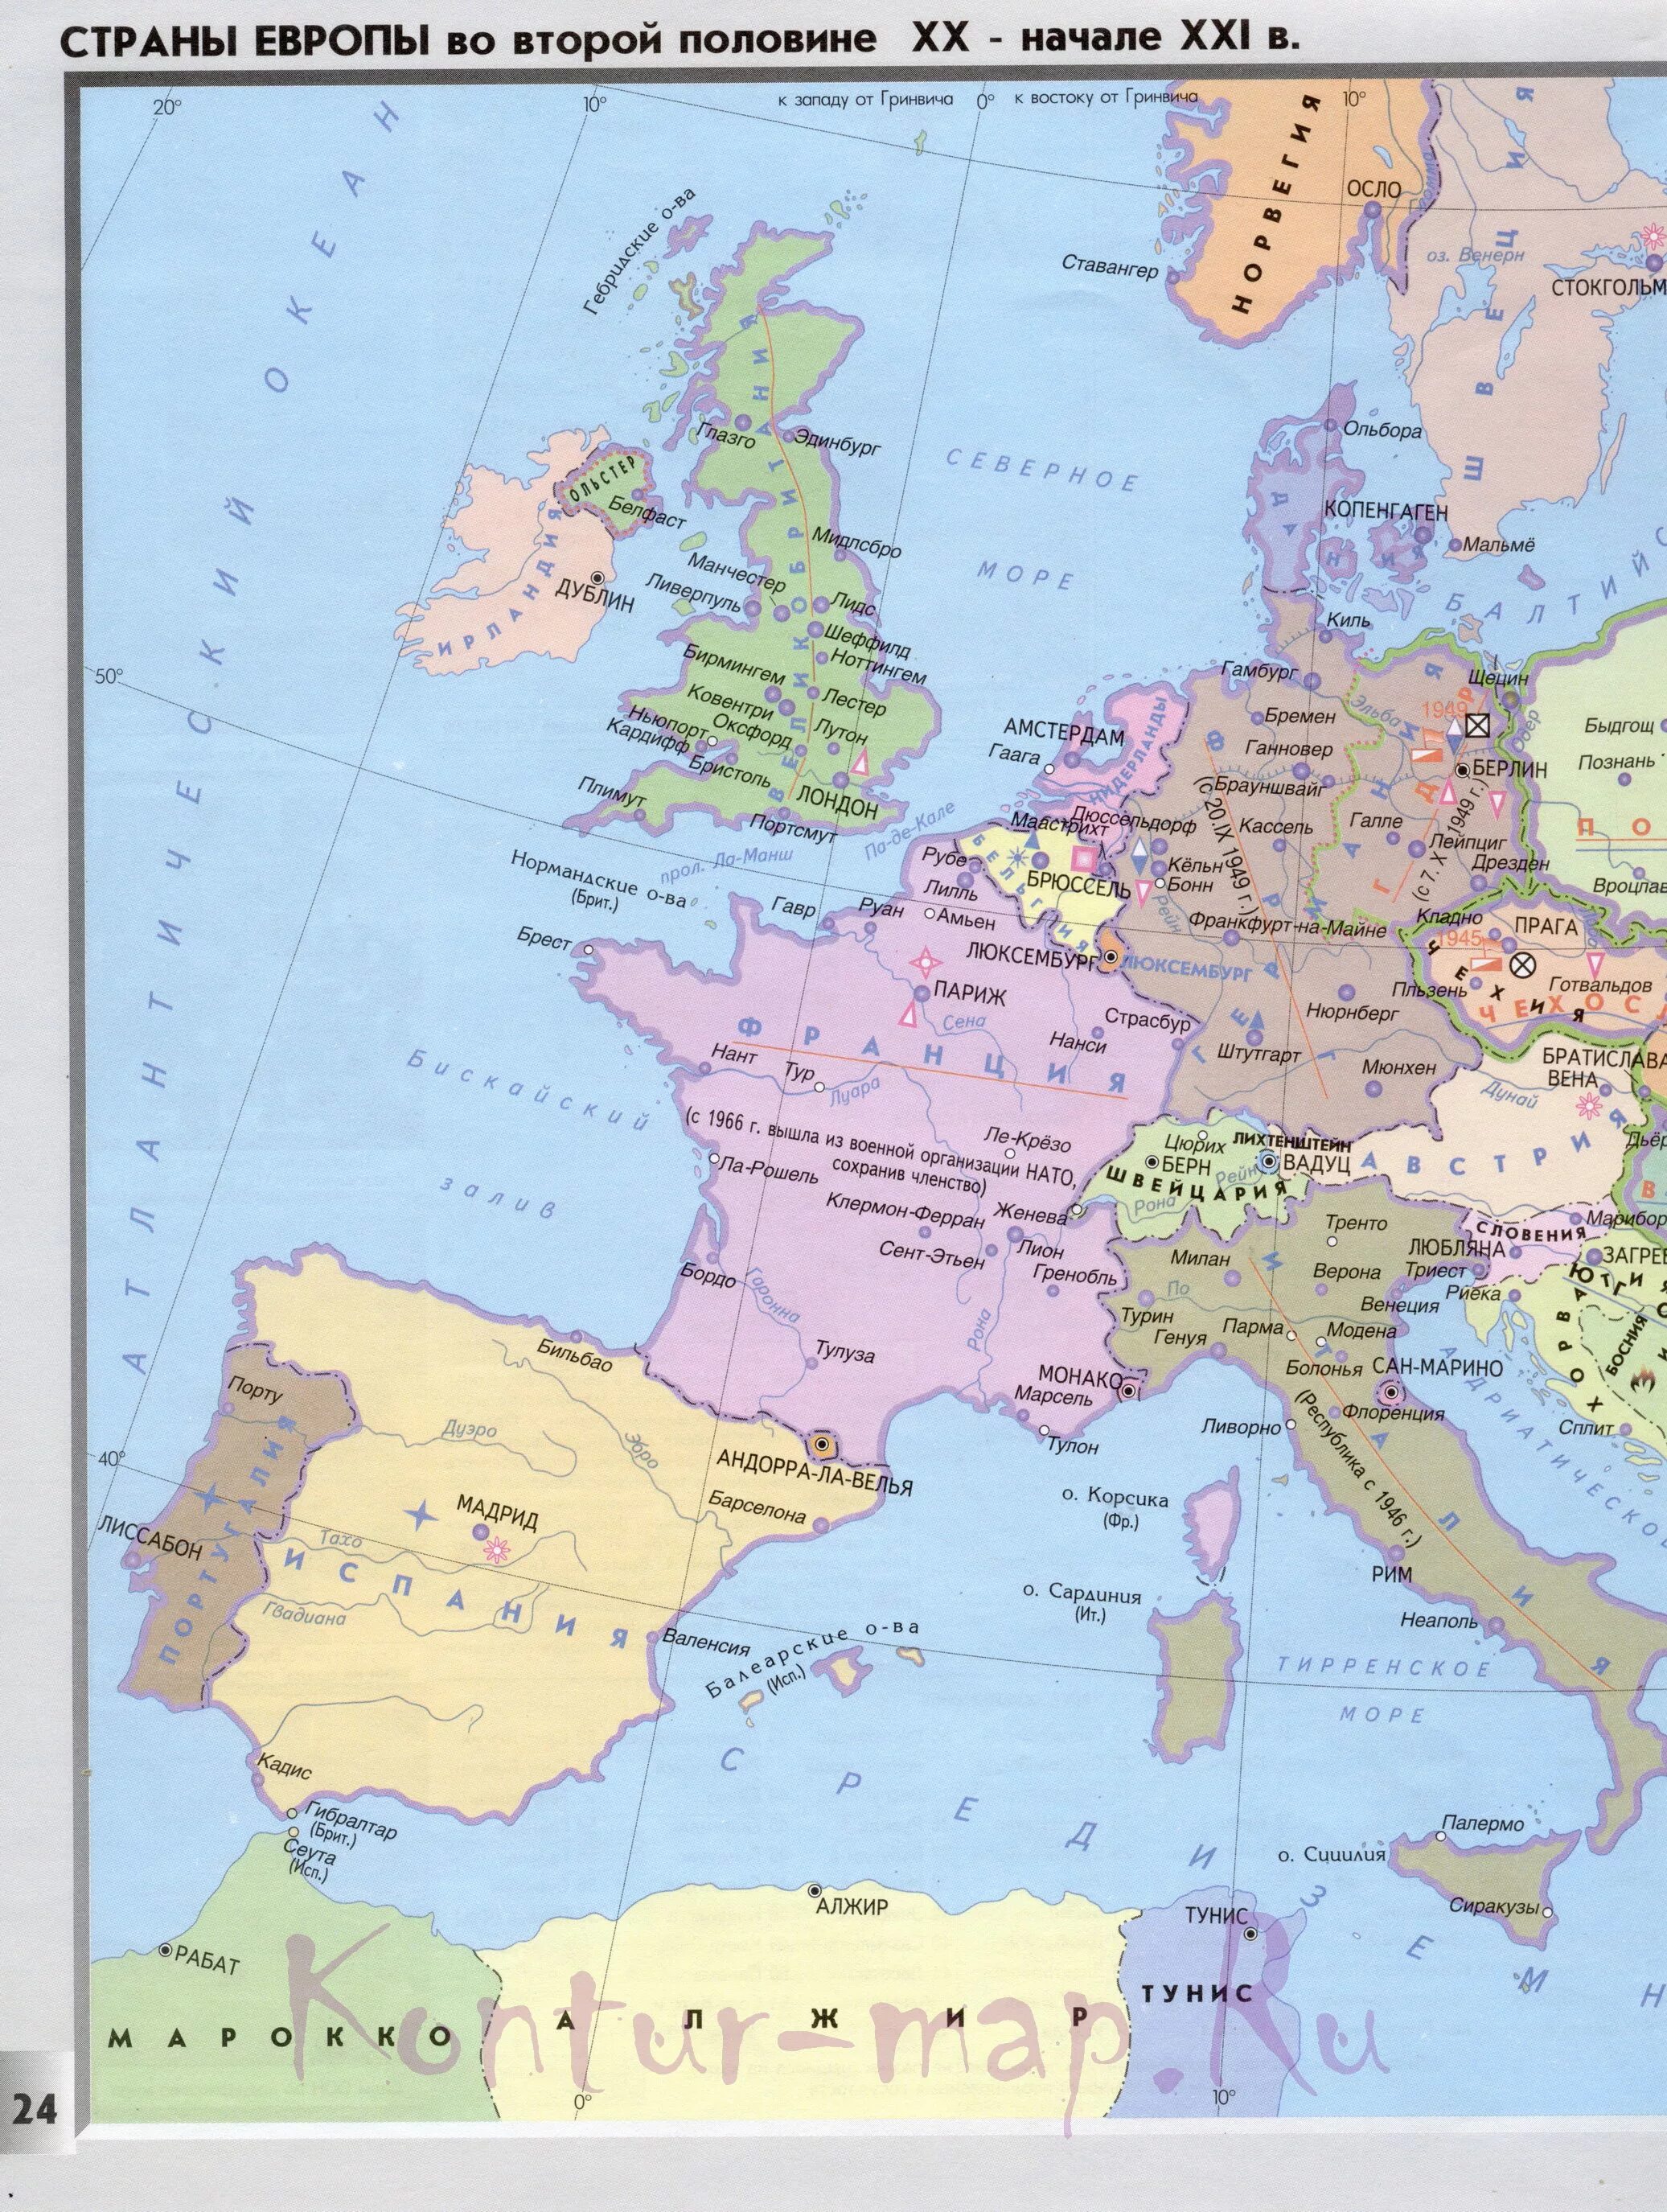 Страны европы во 2 половине 20 века. Карта Европы во второй половине 20 века. Карта Европы в начале 20 века. Политическая карта Европы второй половины 19 века. Карта государств Европы 20 век.